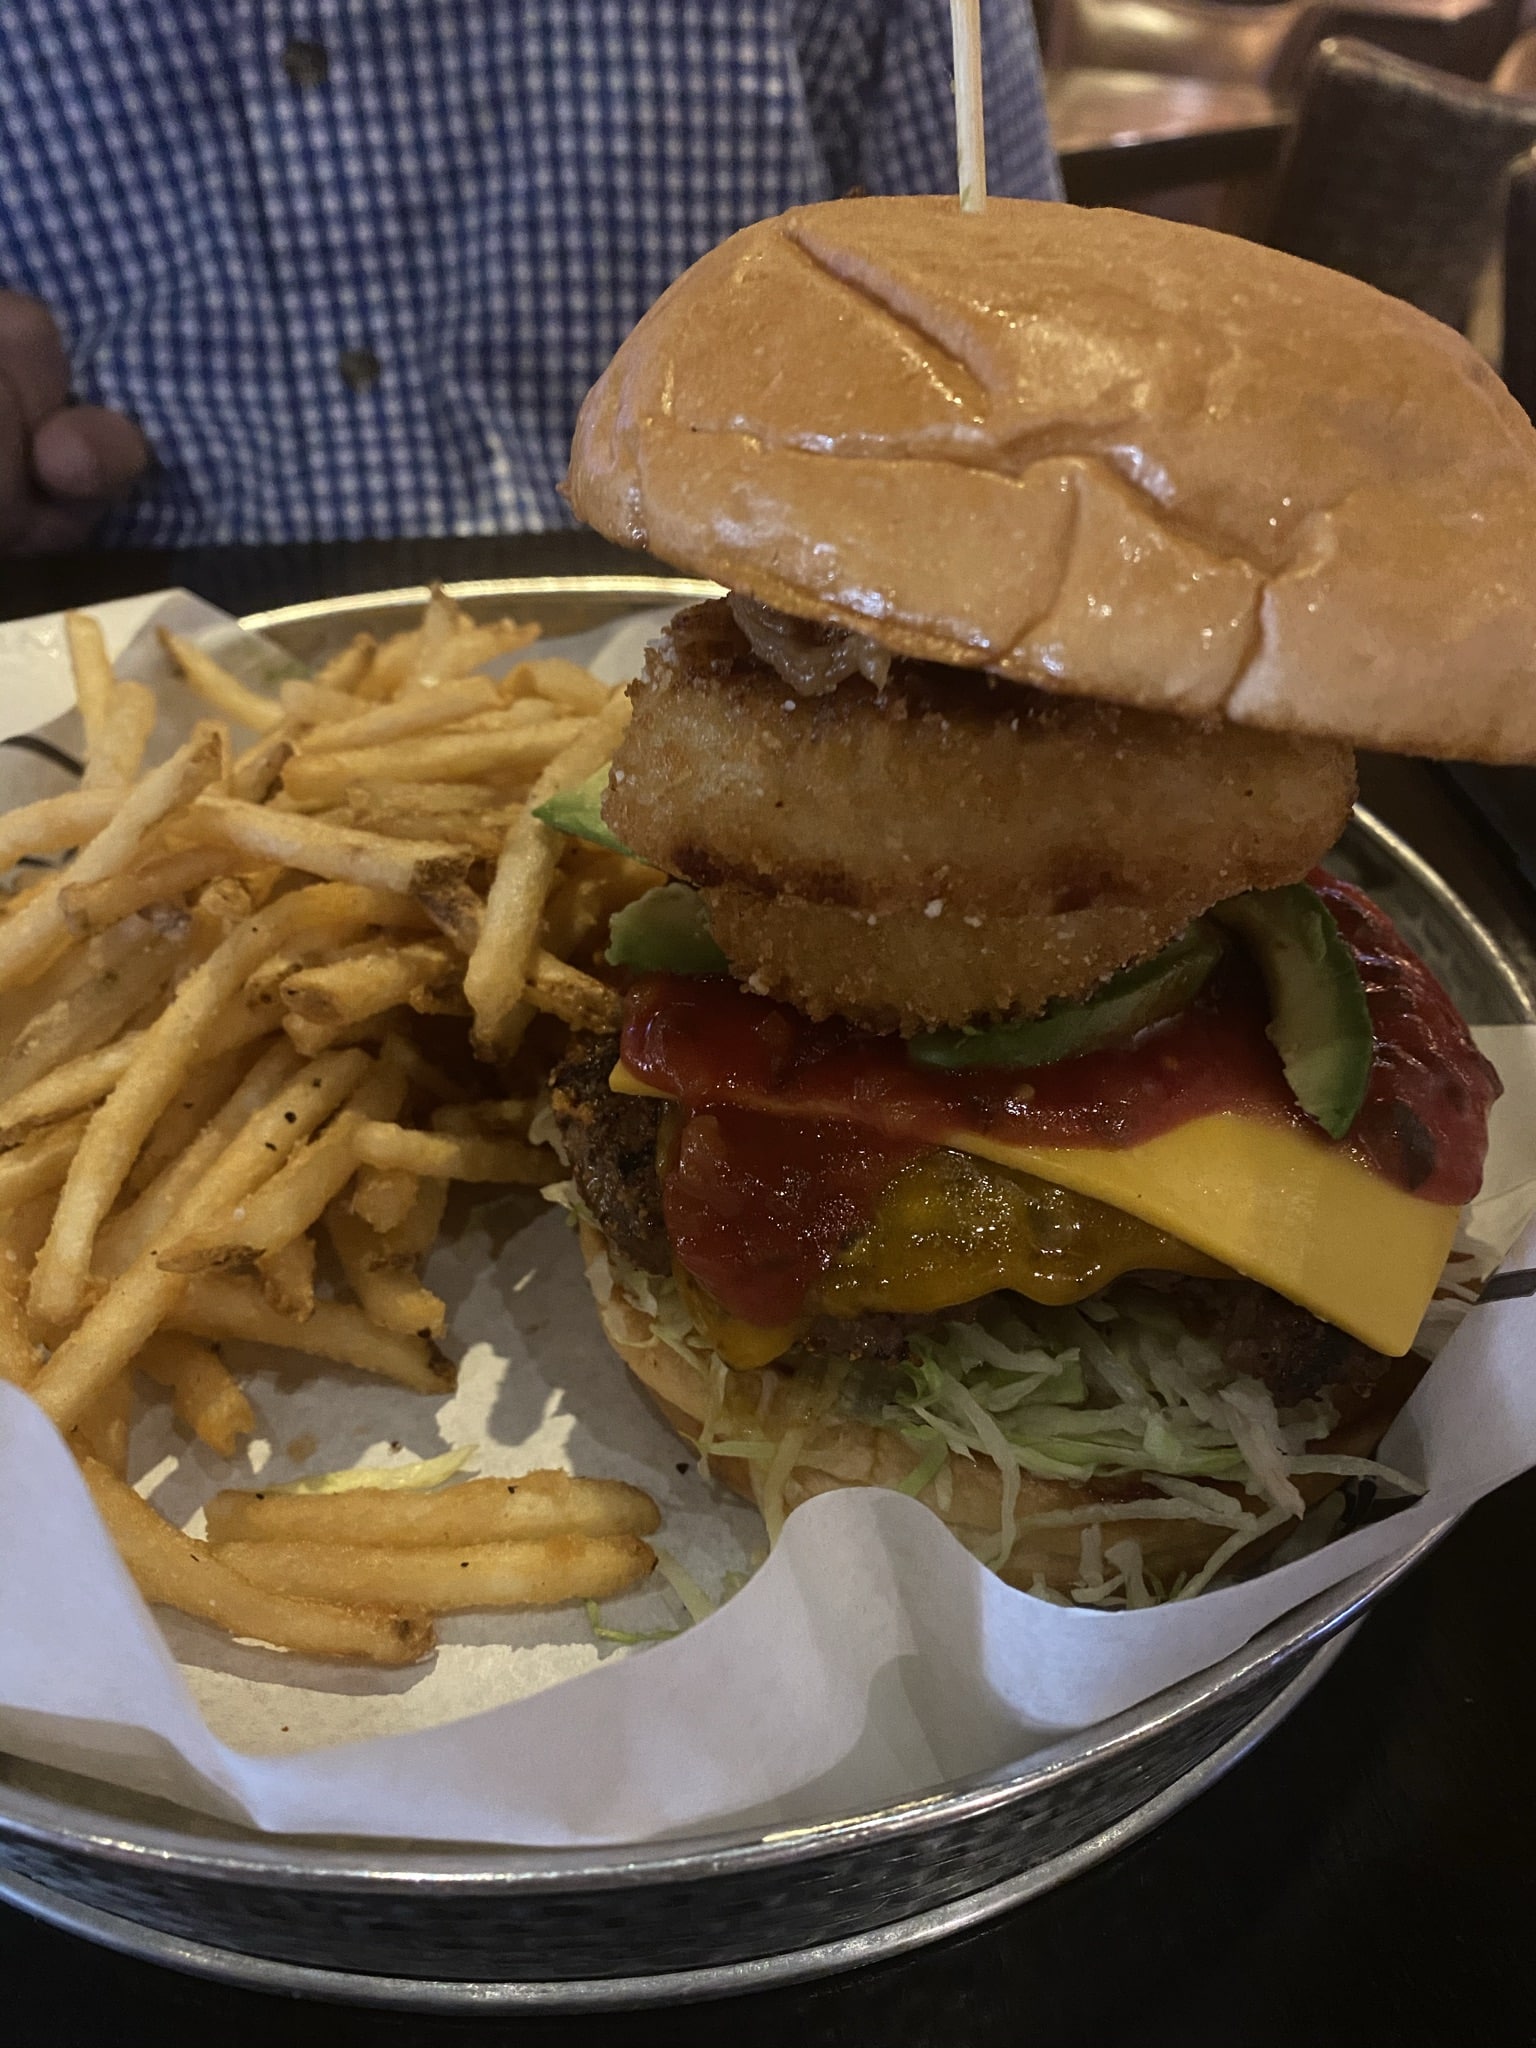 Claim Jumper - the widow maker burger